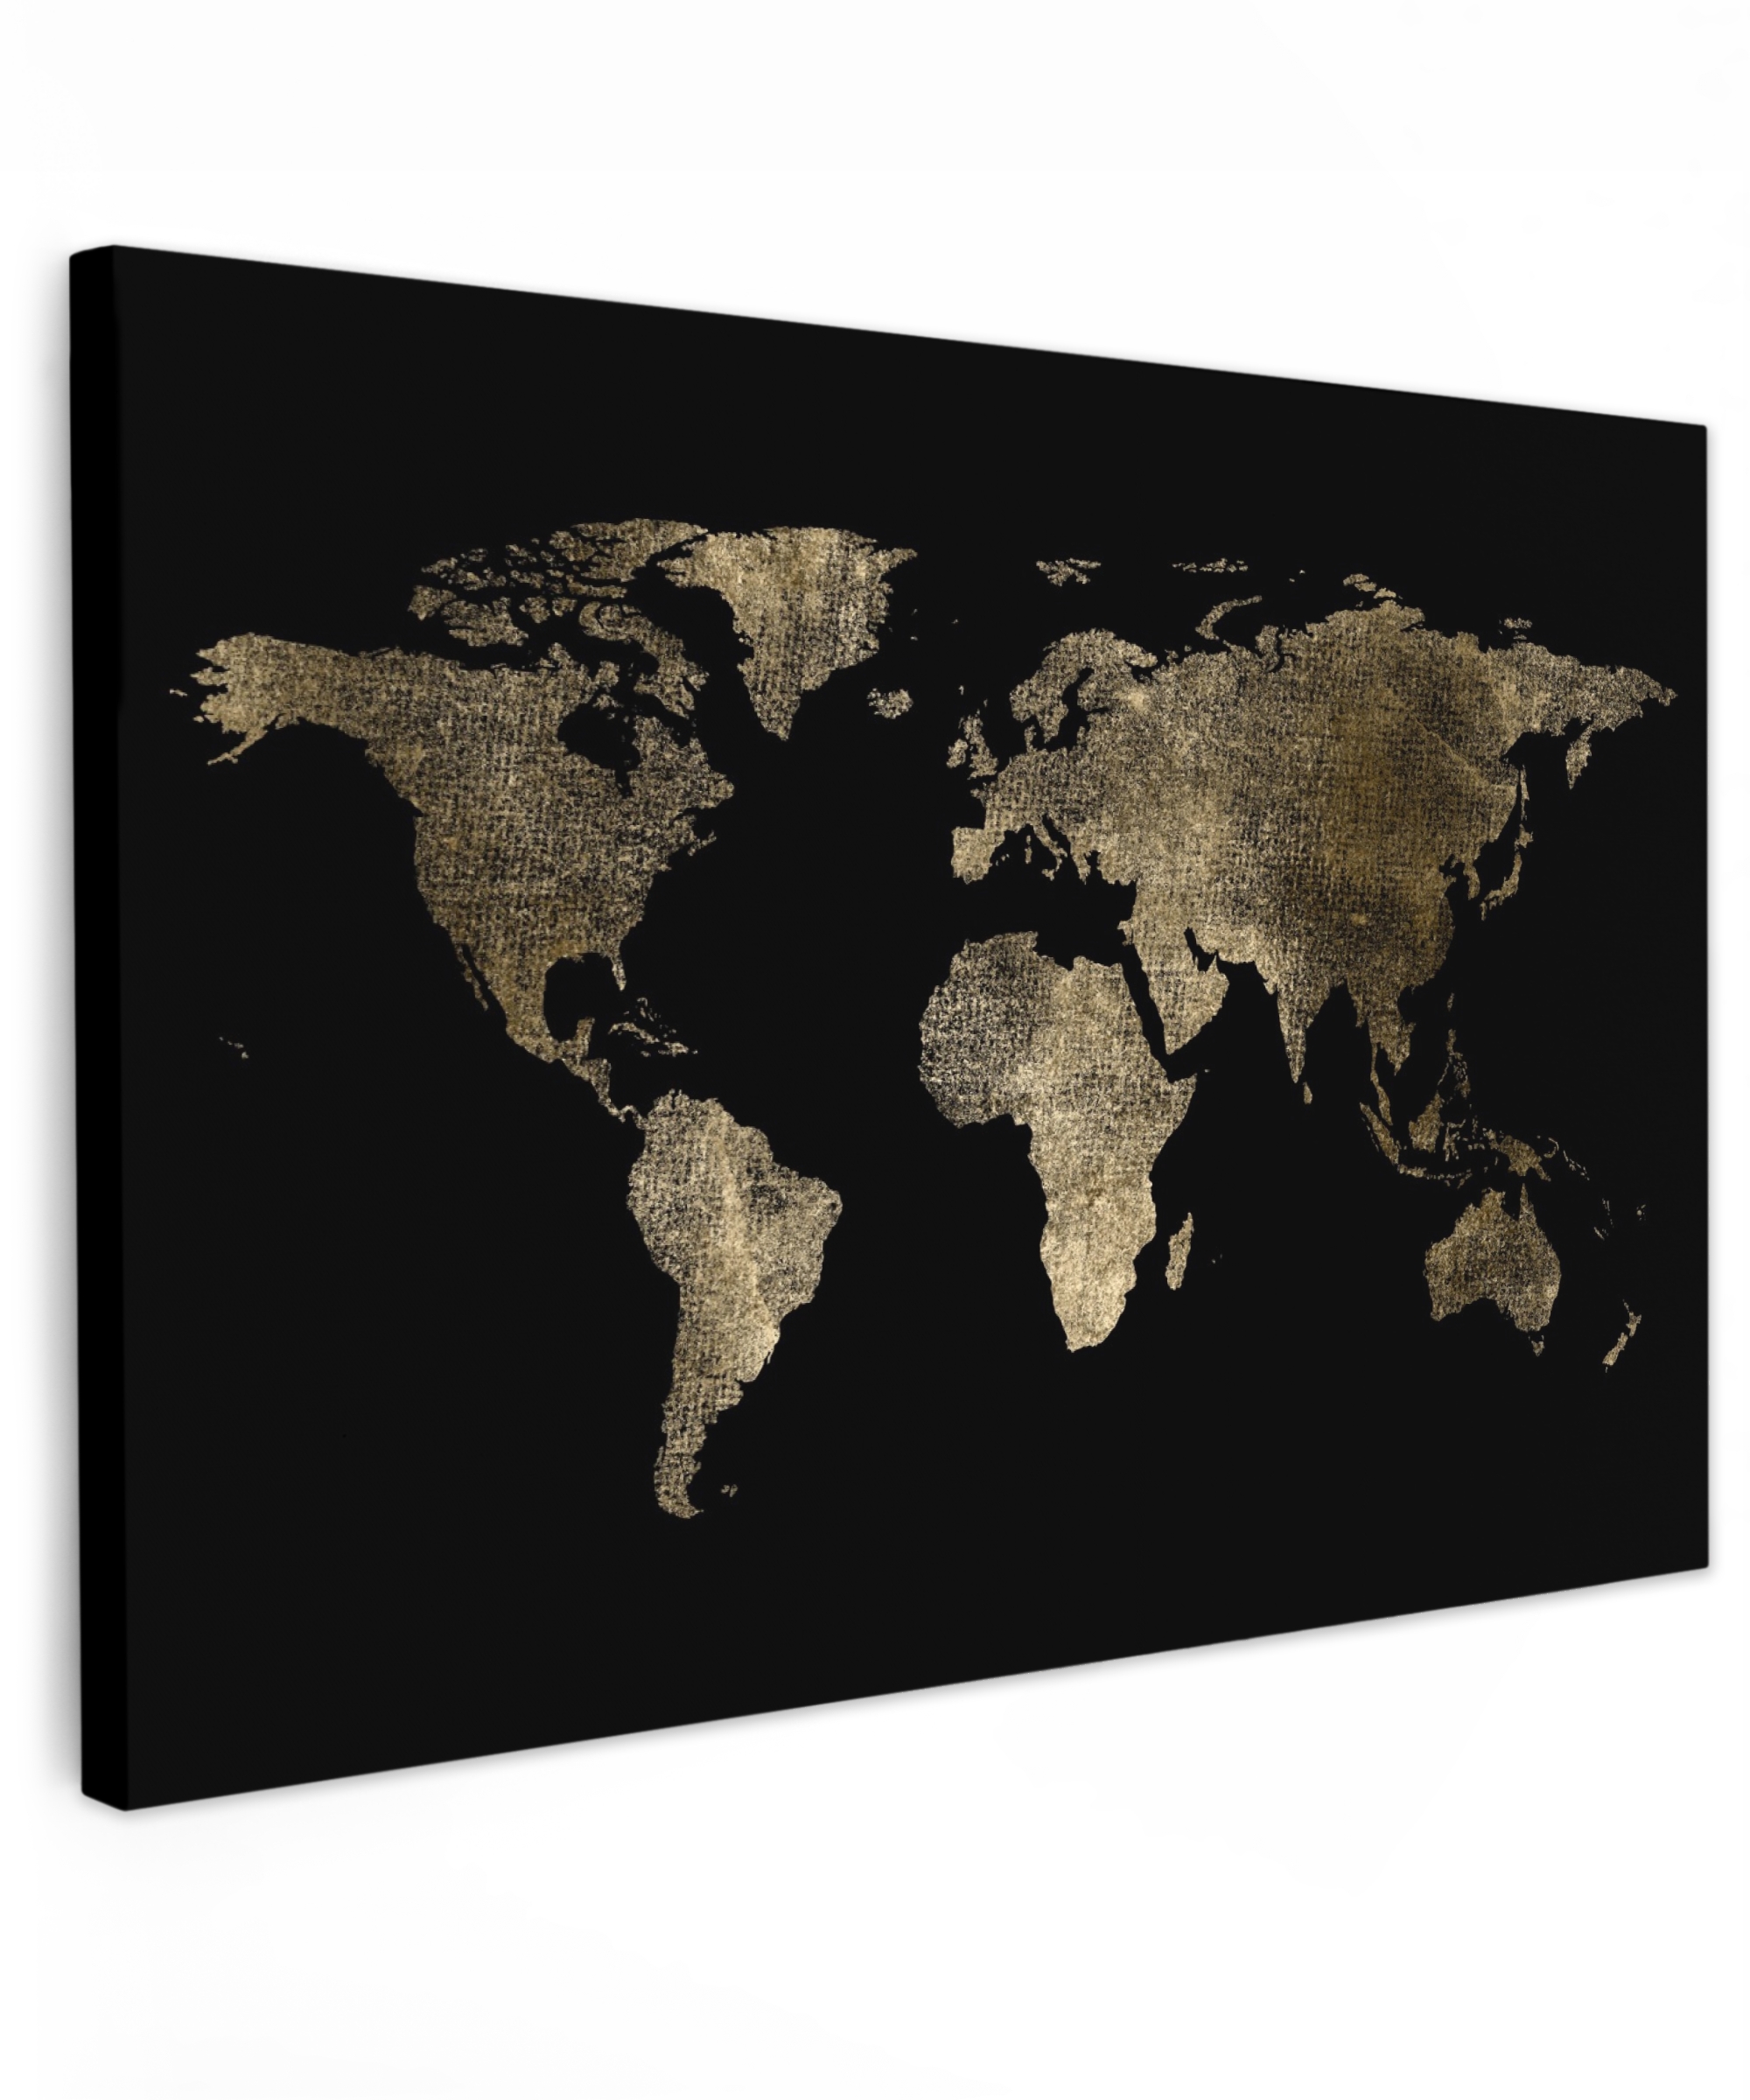 Leinwandbild - Weltkarte - Gold - Schwarz - Erde - Luxus